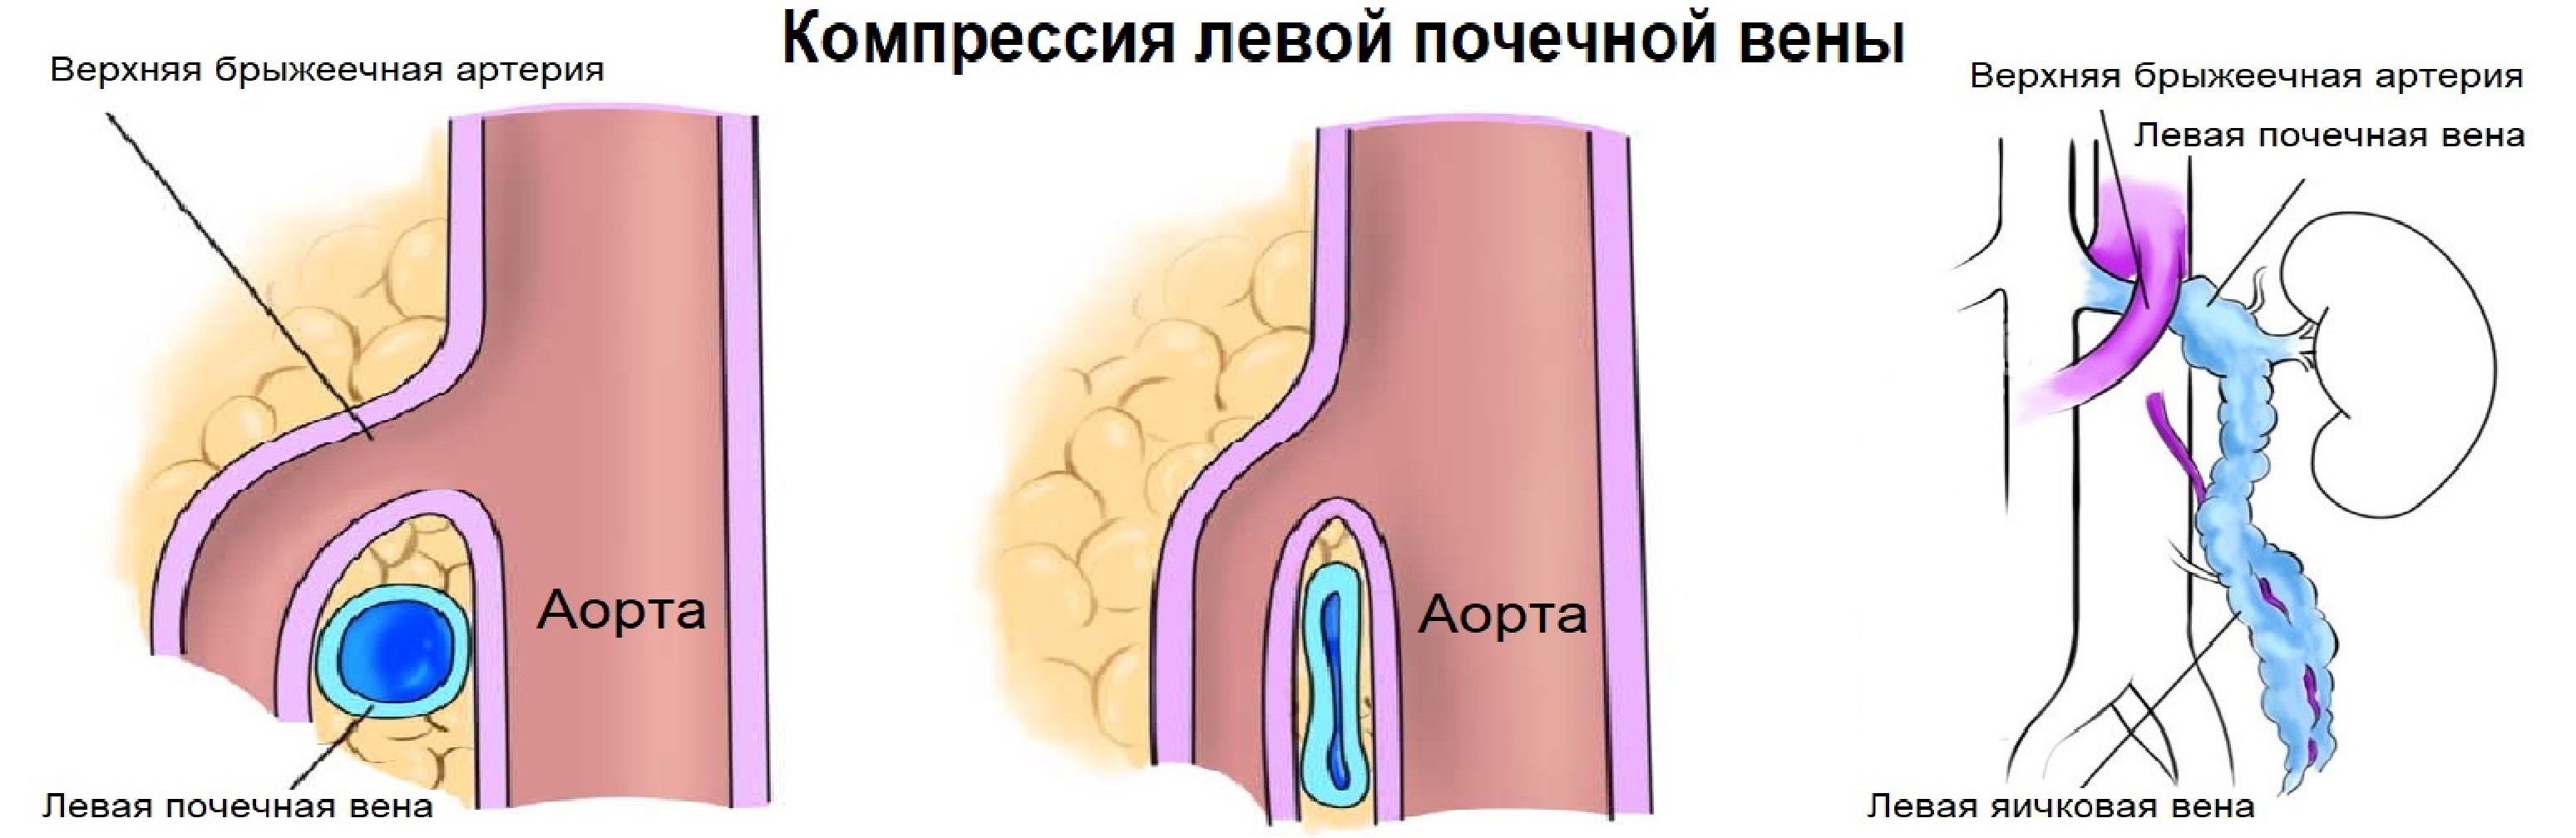 Расширение семенной вены. Синдром сдавления левой почечной вены. Компрессия левой почечной вены. Аорто-мезентериальной компрессии левой почечной вены.. Стентирование левой почечной вены.